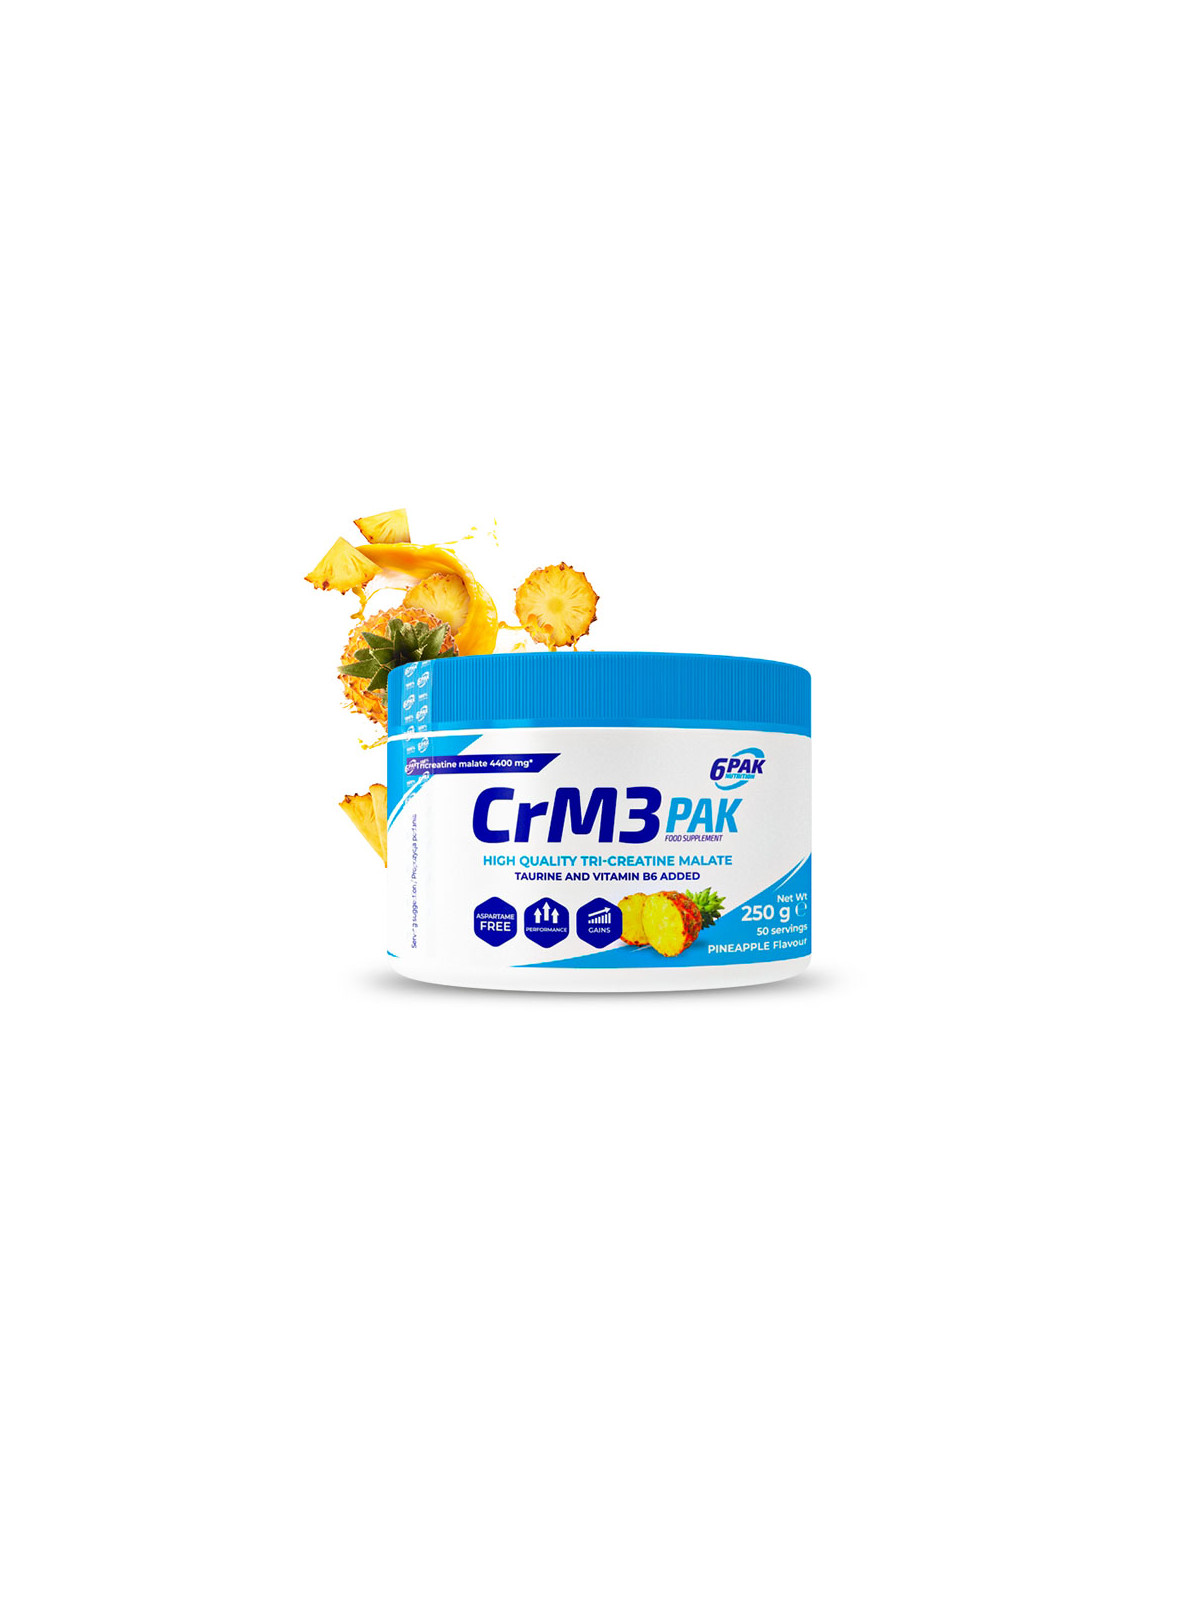 CrM3 PAK - Kreatyna w proszku - 250g - Pineapple